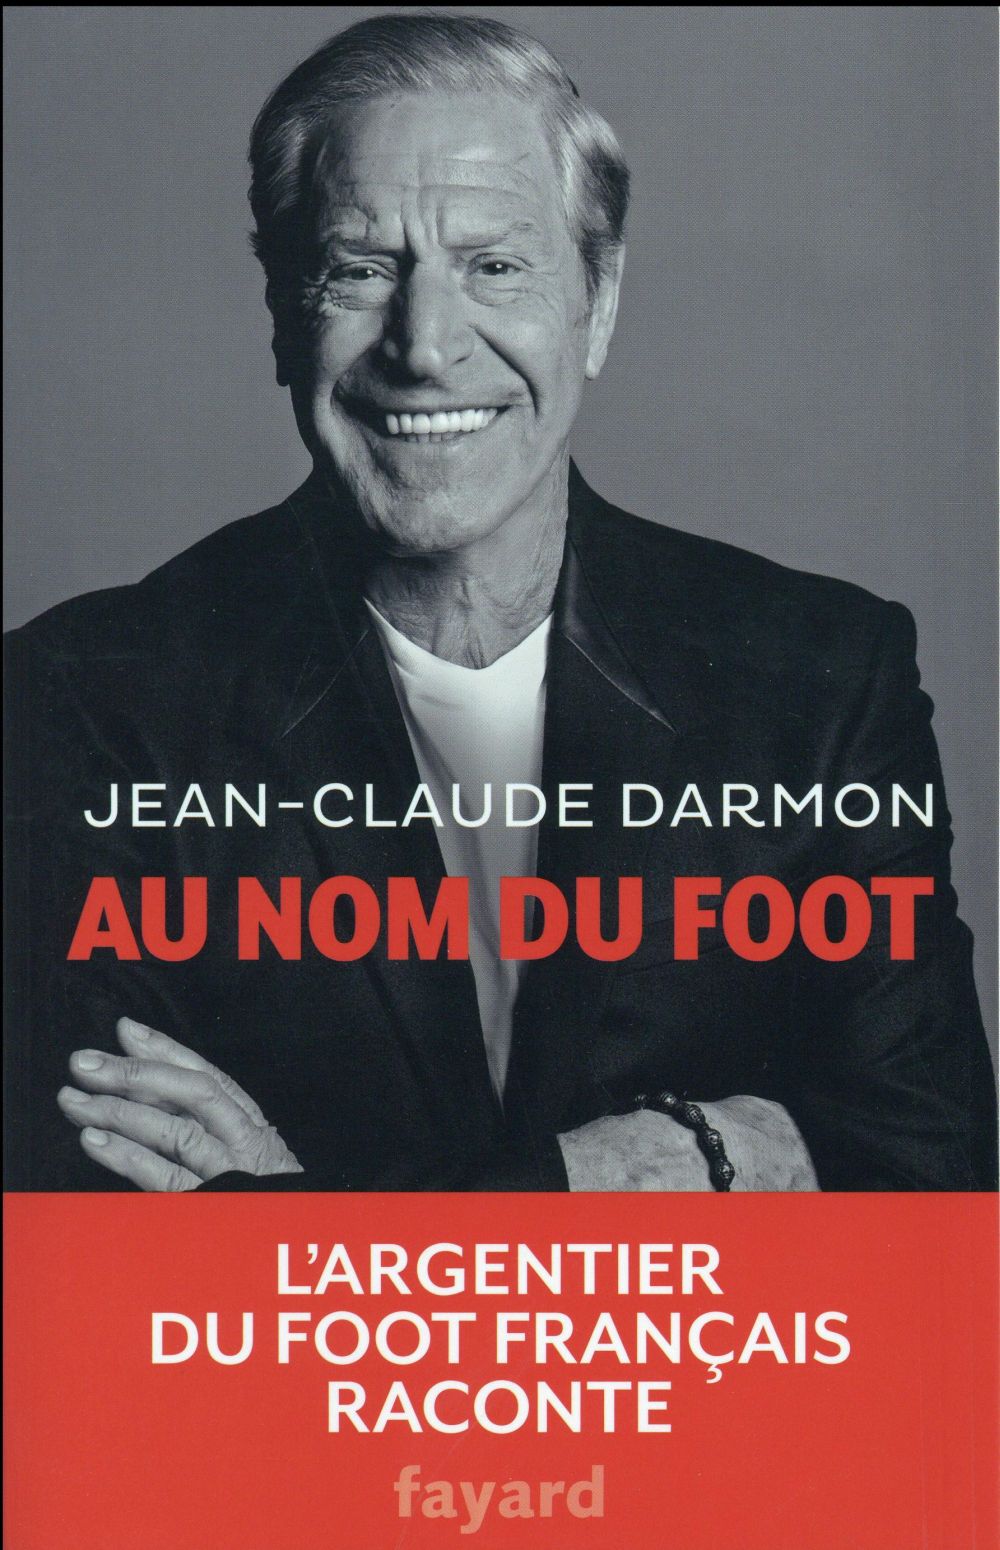 Jean-Claude Darmon, le Monsieur argent du foot